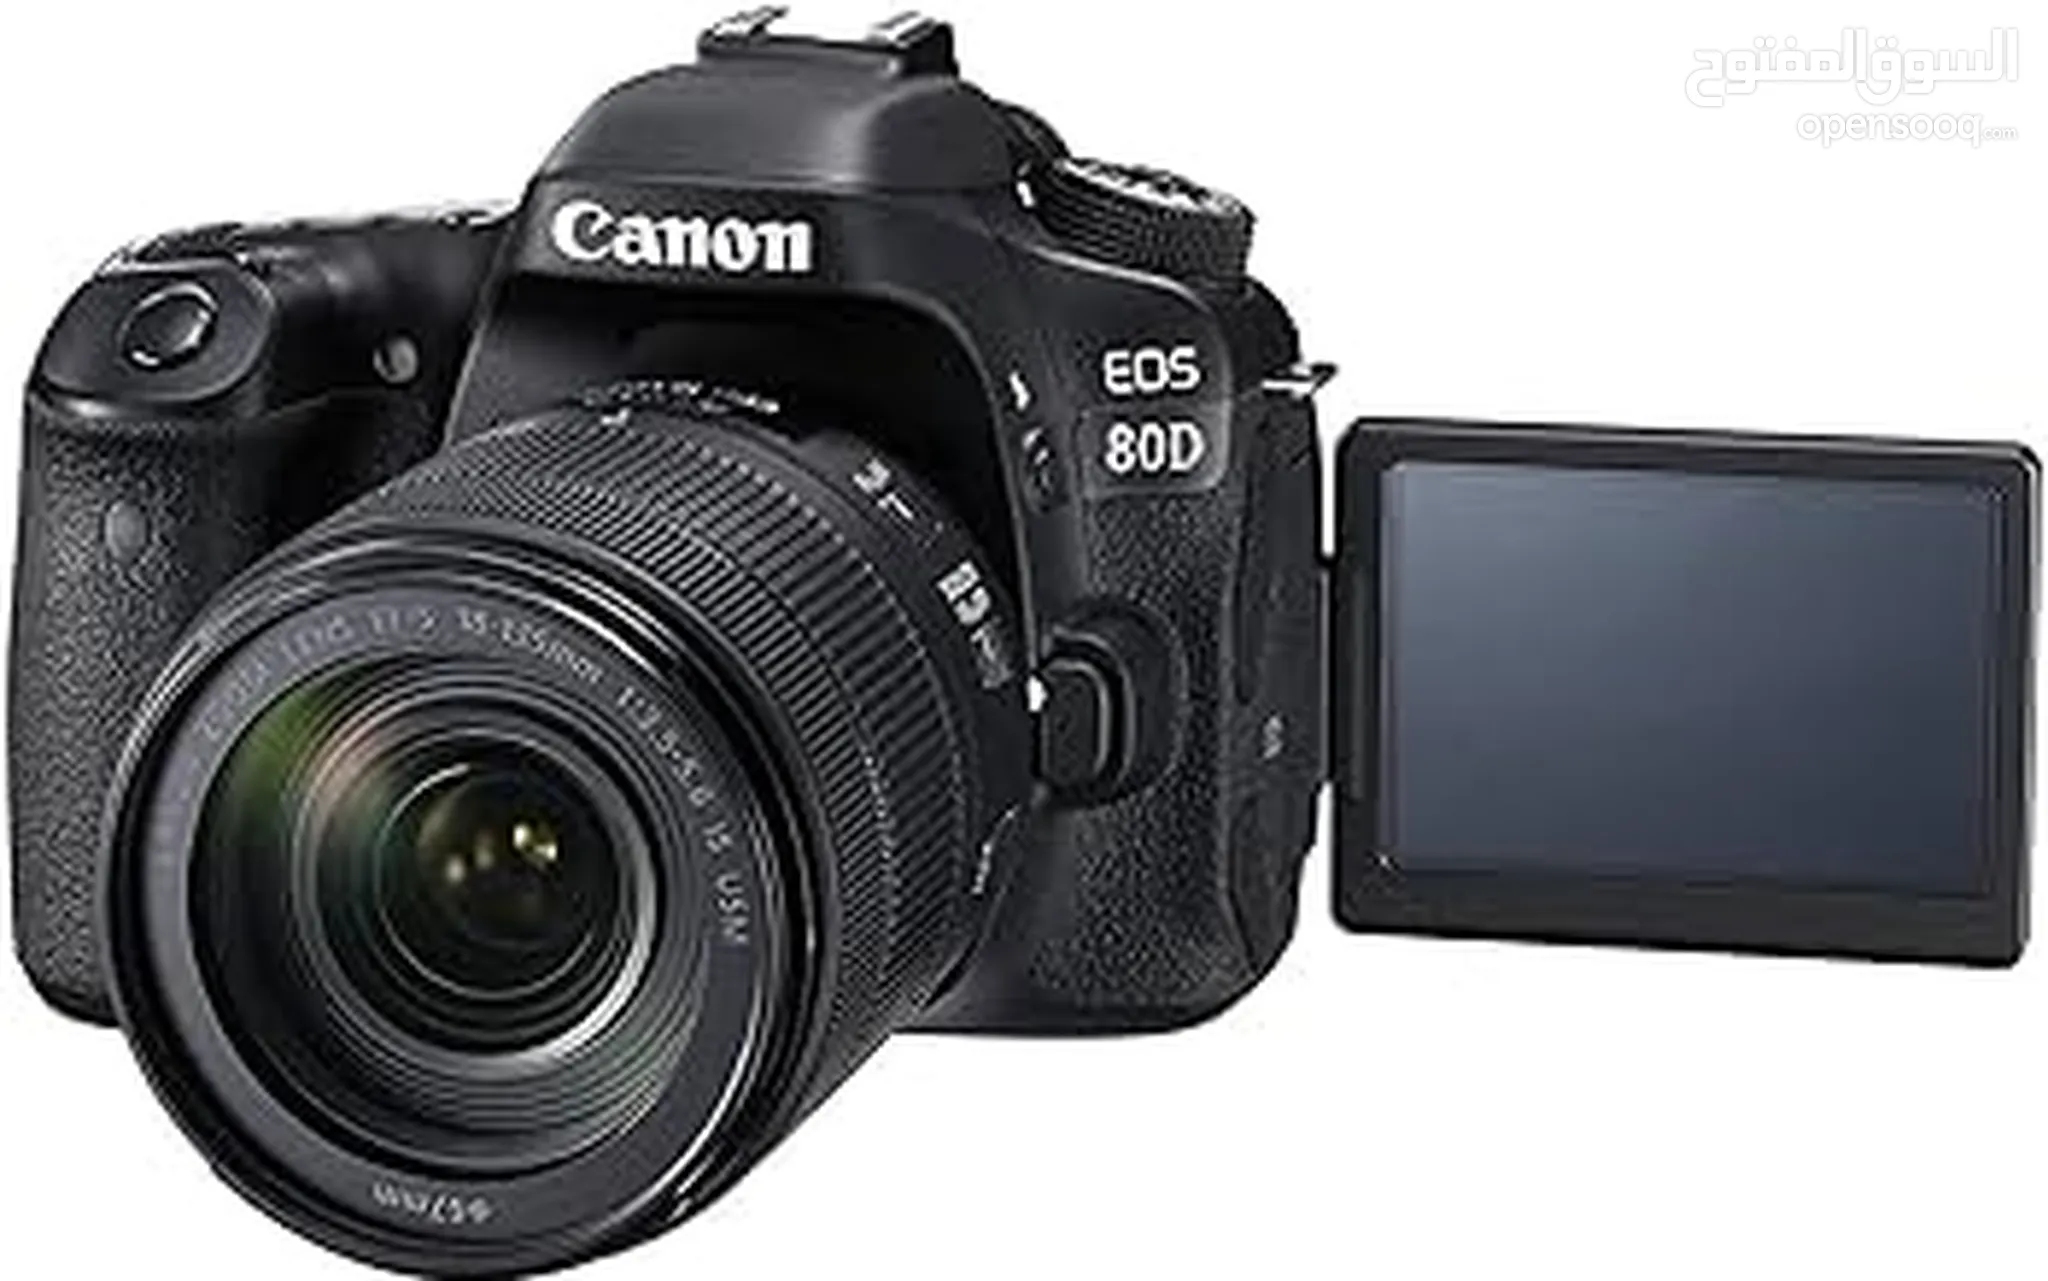 كام كانون للبيع : كاميرا كانون 4000d : 70D : 700D : 600D : 5D : أفضل  الأسعار : الإمارات | السوق المفتوح